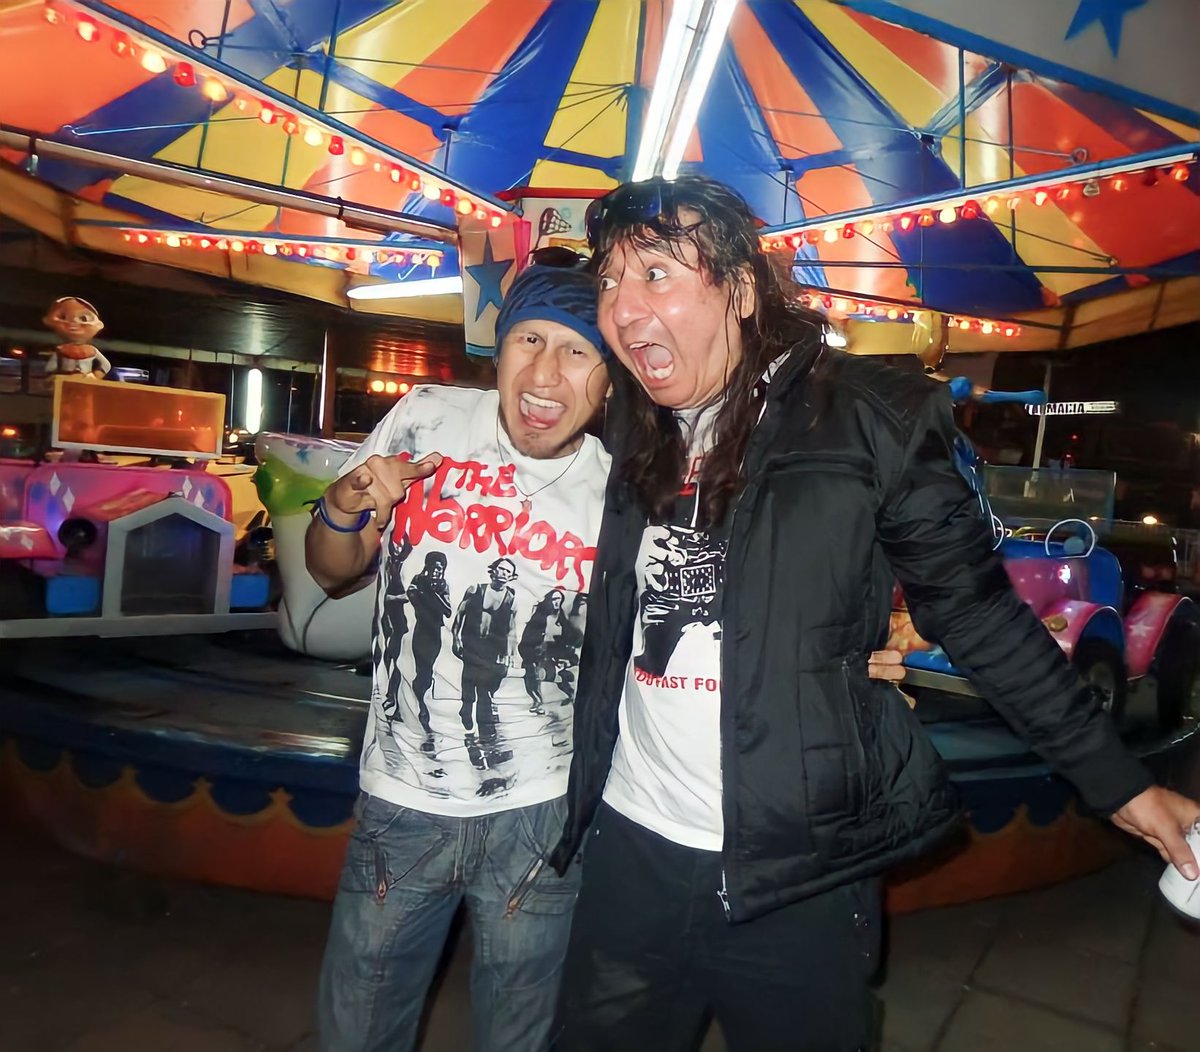 León Vago y Victor Soto 

#QueremosRock #LeonVago #Rock #RockMexicano #RockEnEspañol #RockLatino #VictorSotoOficial #TvRadioMx